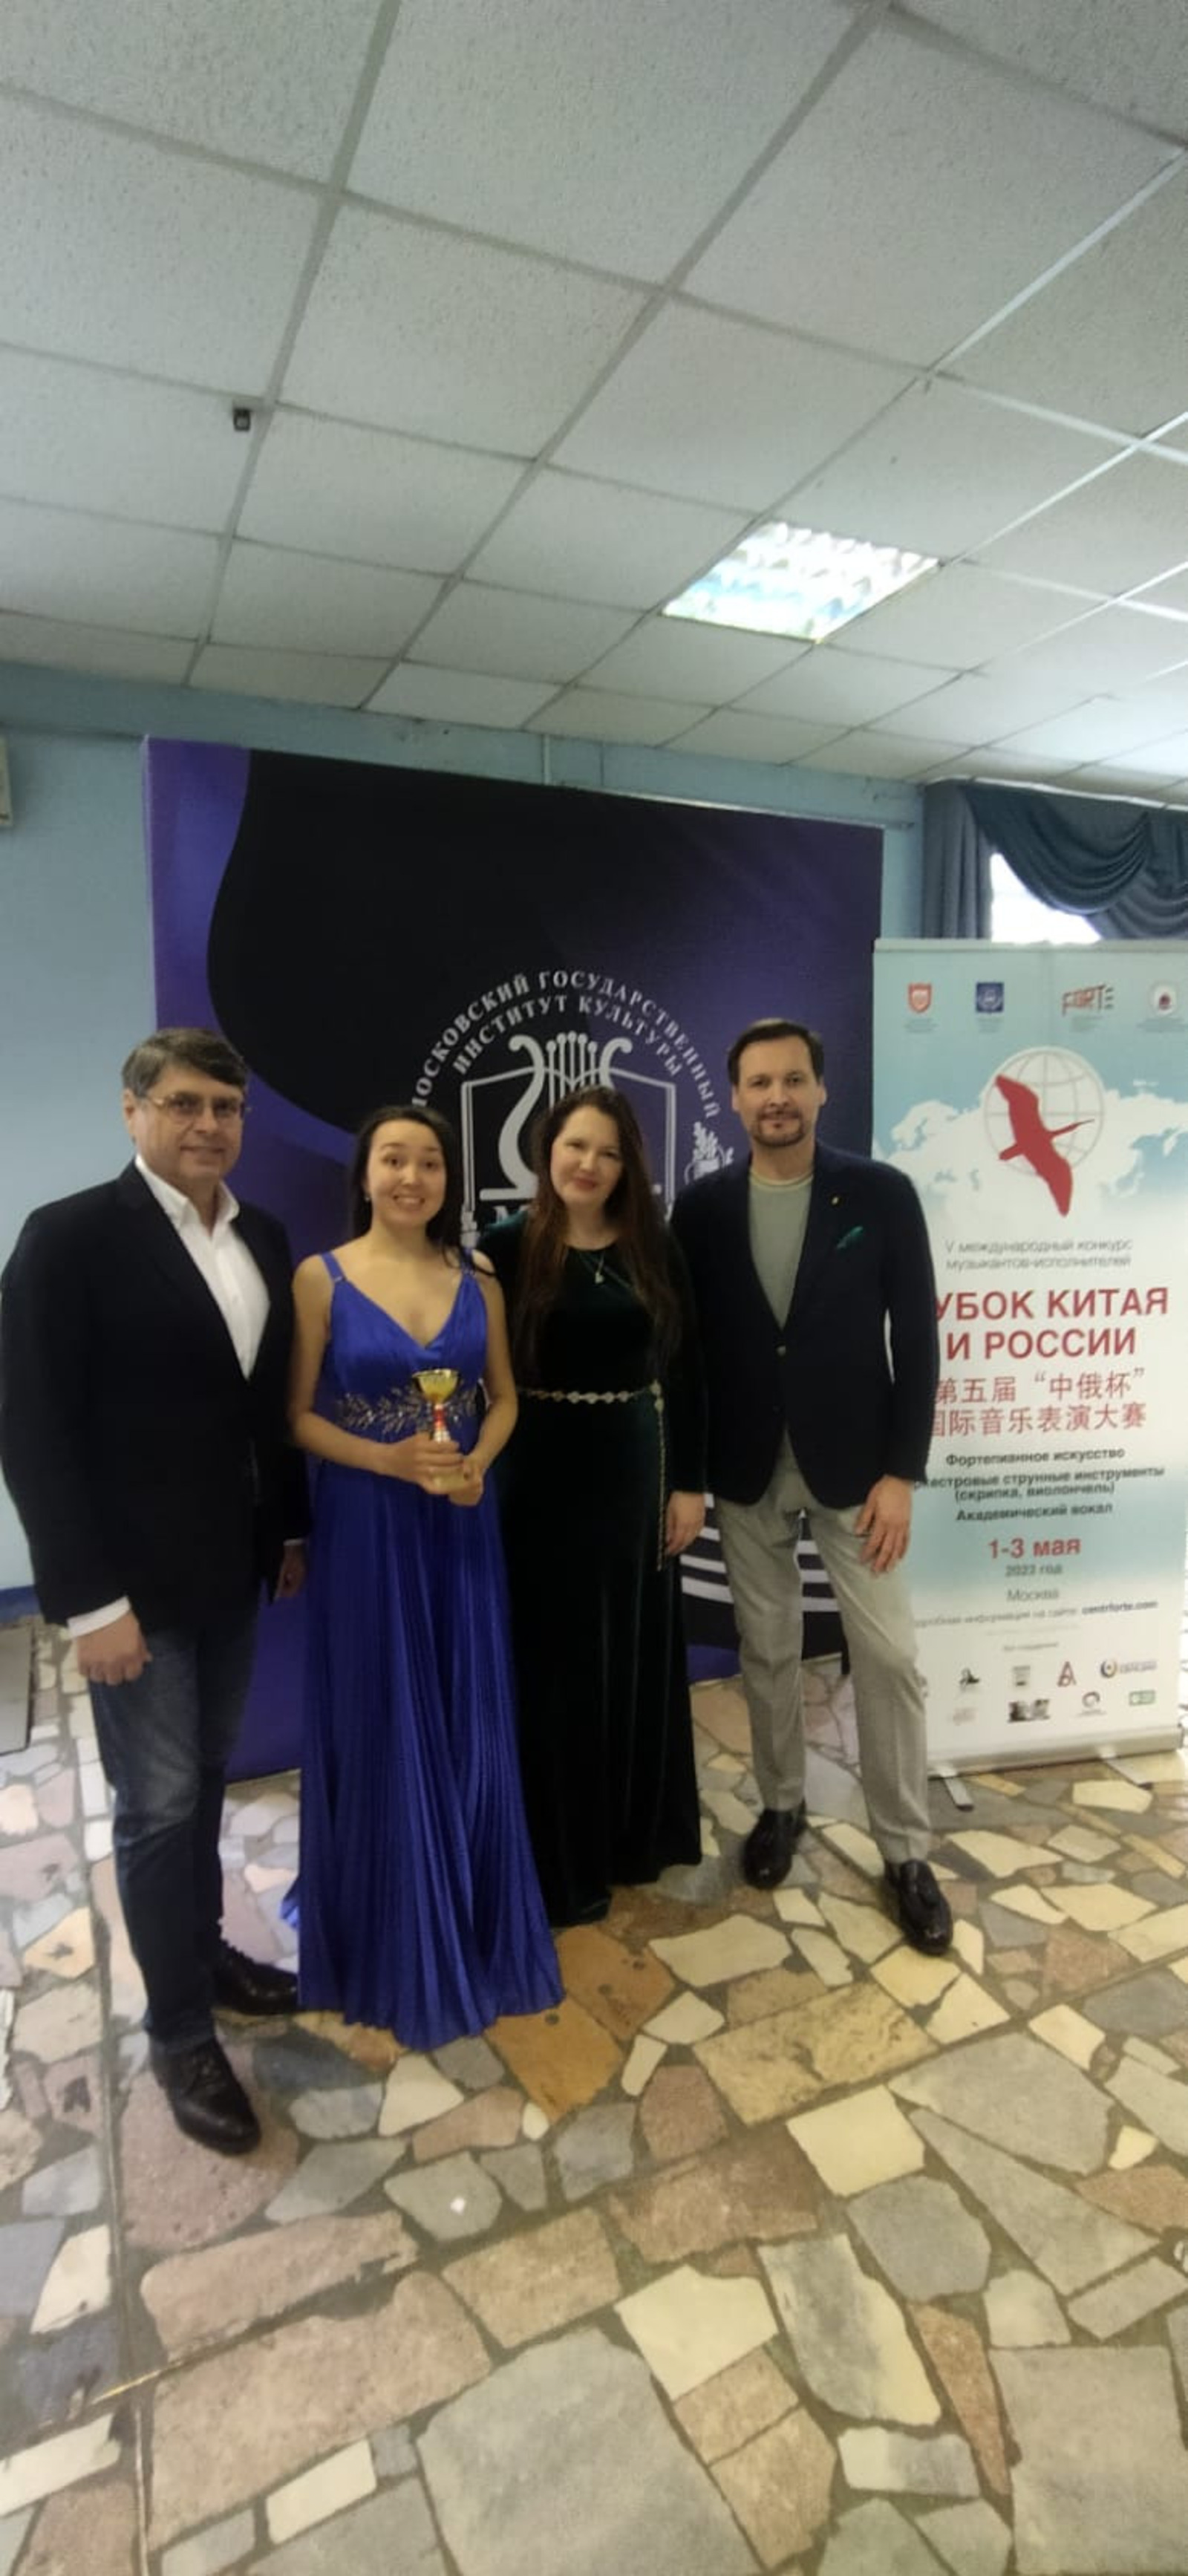 Певица из Уфы победила в конкурсе музыкантов, исполнителей и вокалистов «Кубок Китая и России»